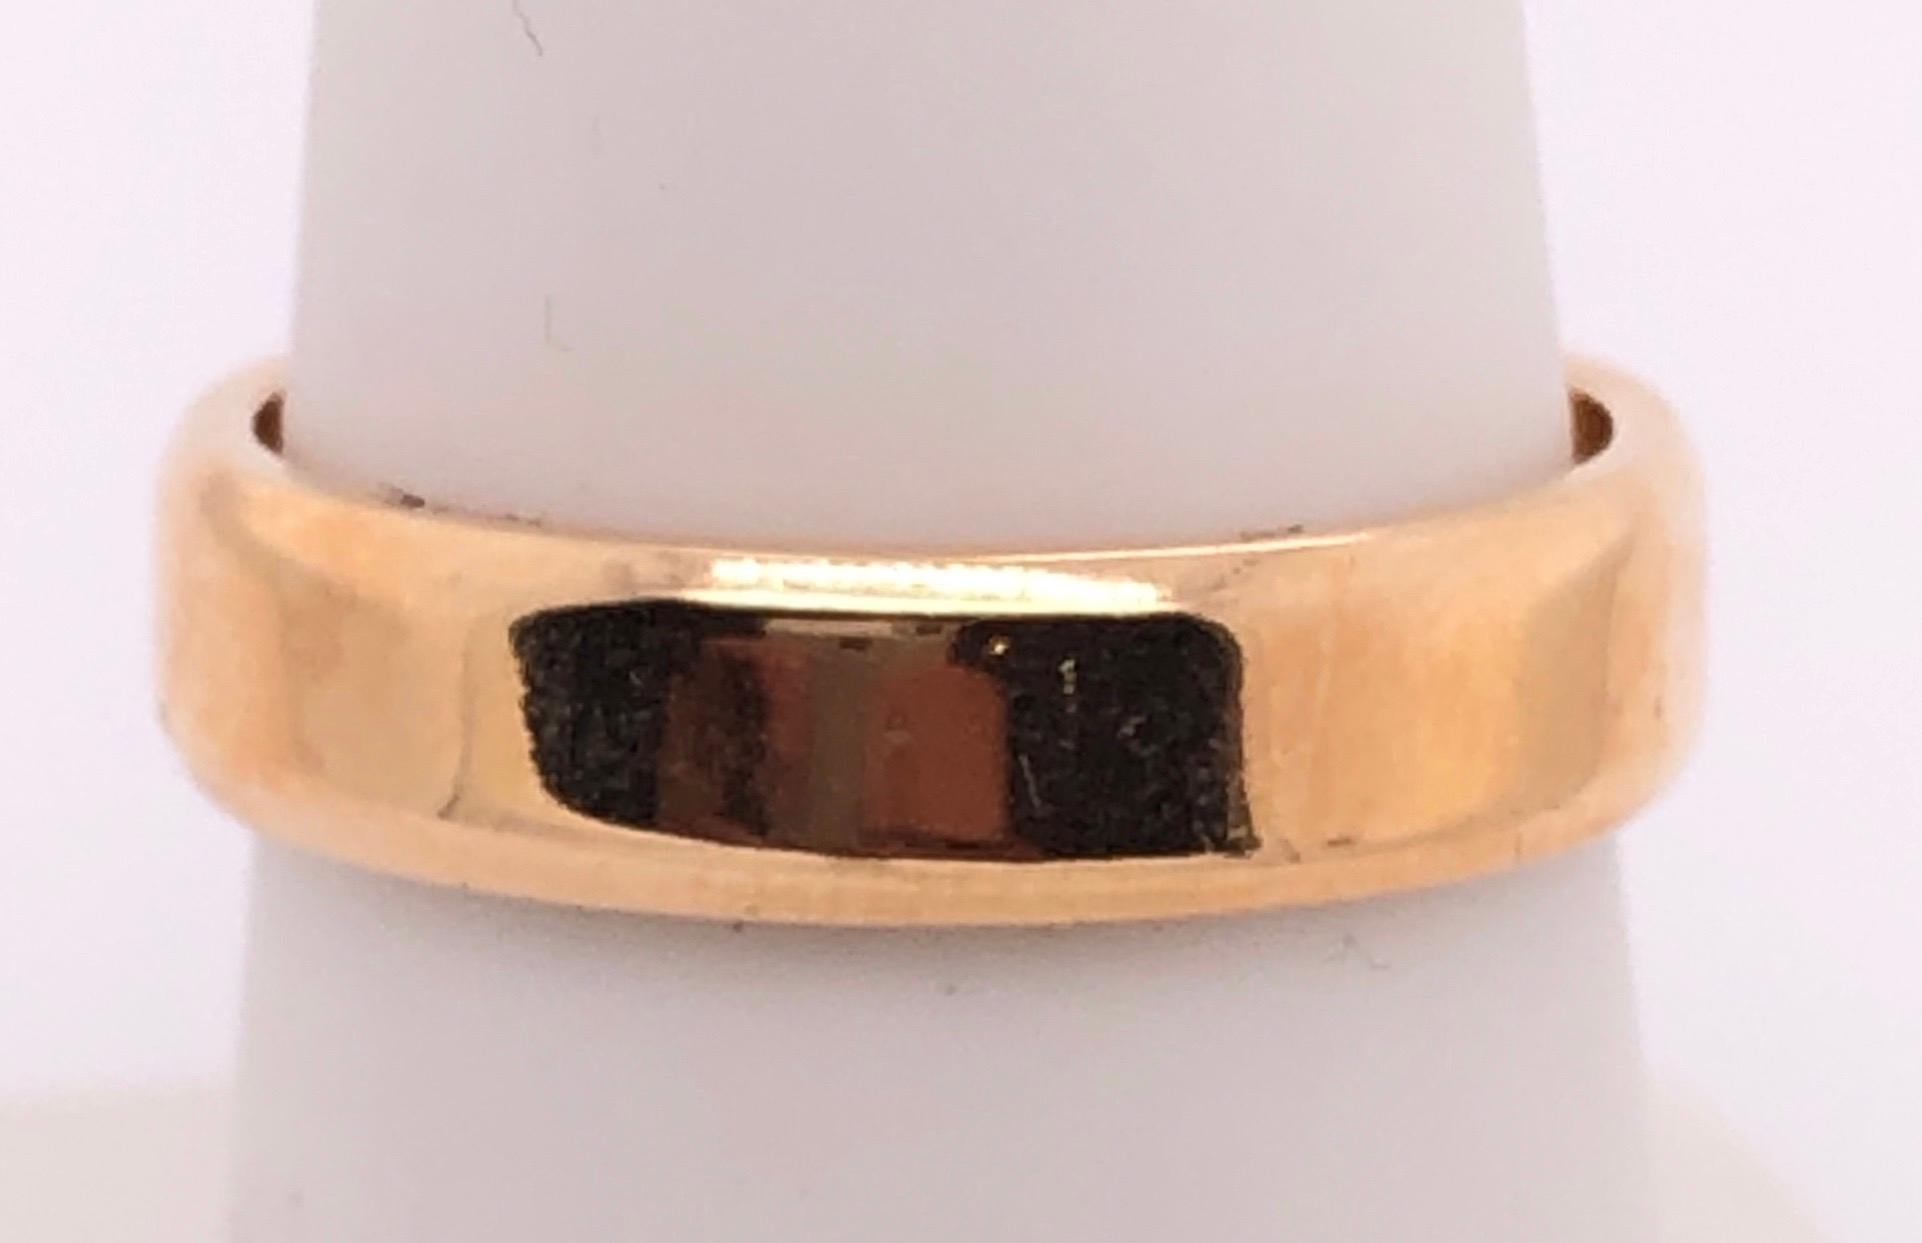 18 Karat Yellow Gold Wedding Ring / Band Size 7.
5 grams total weight.